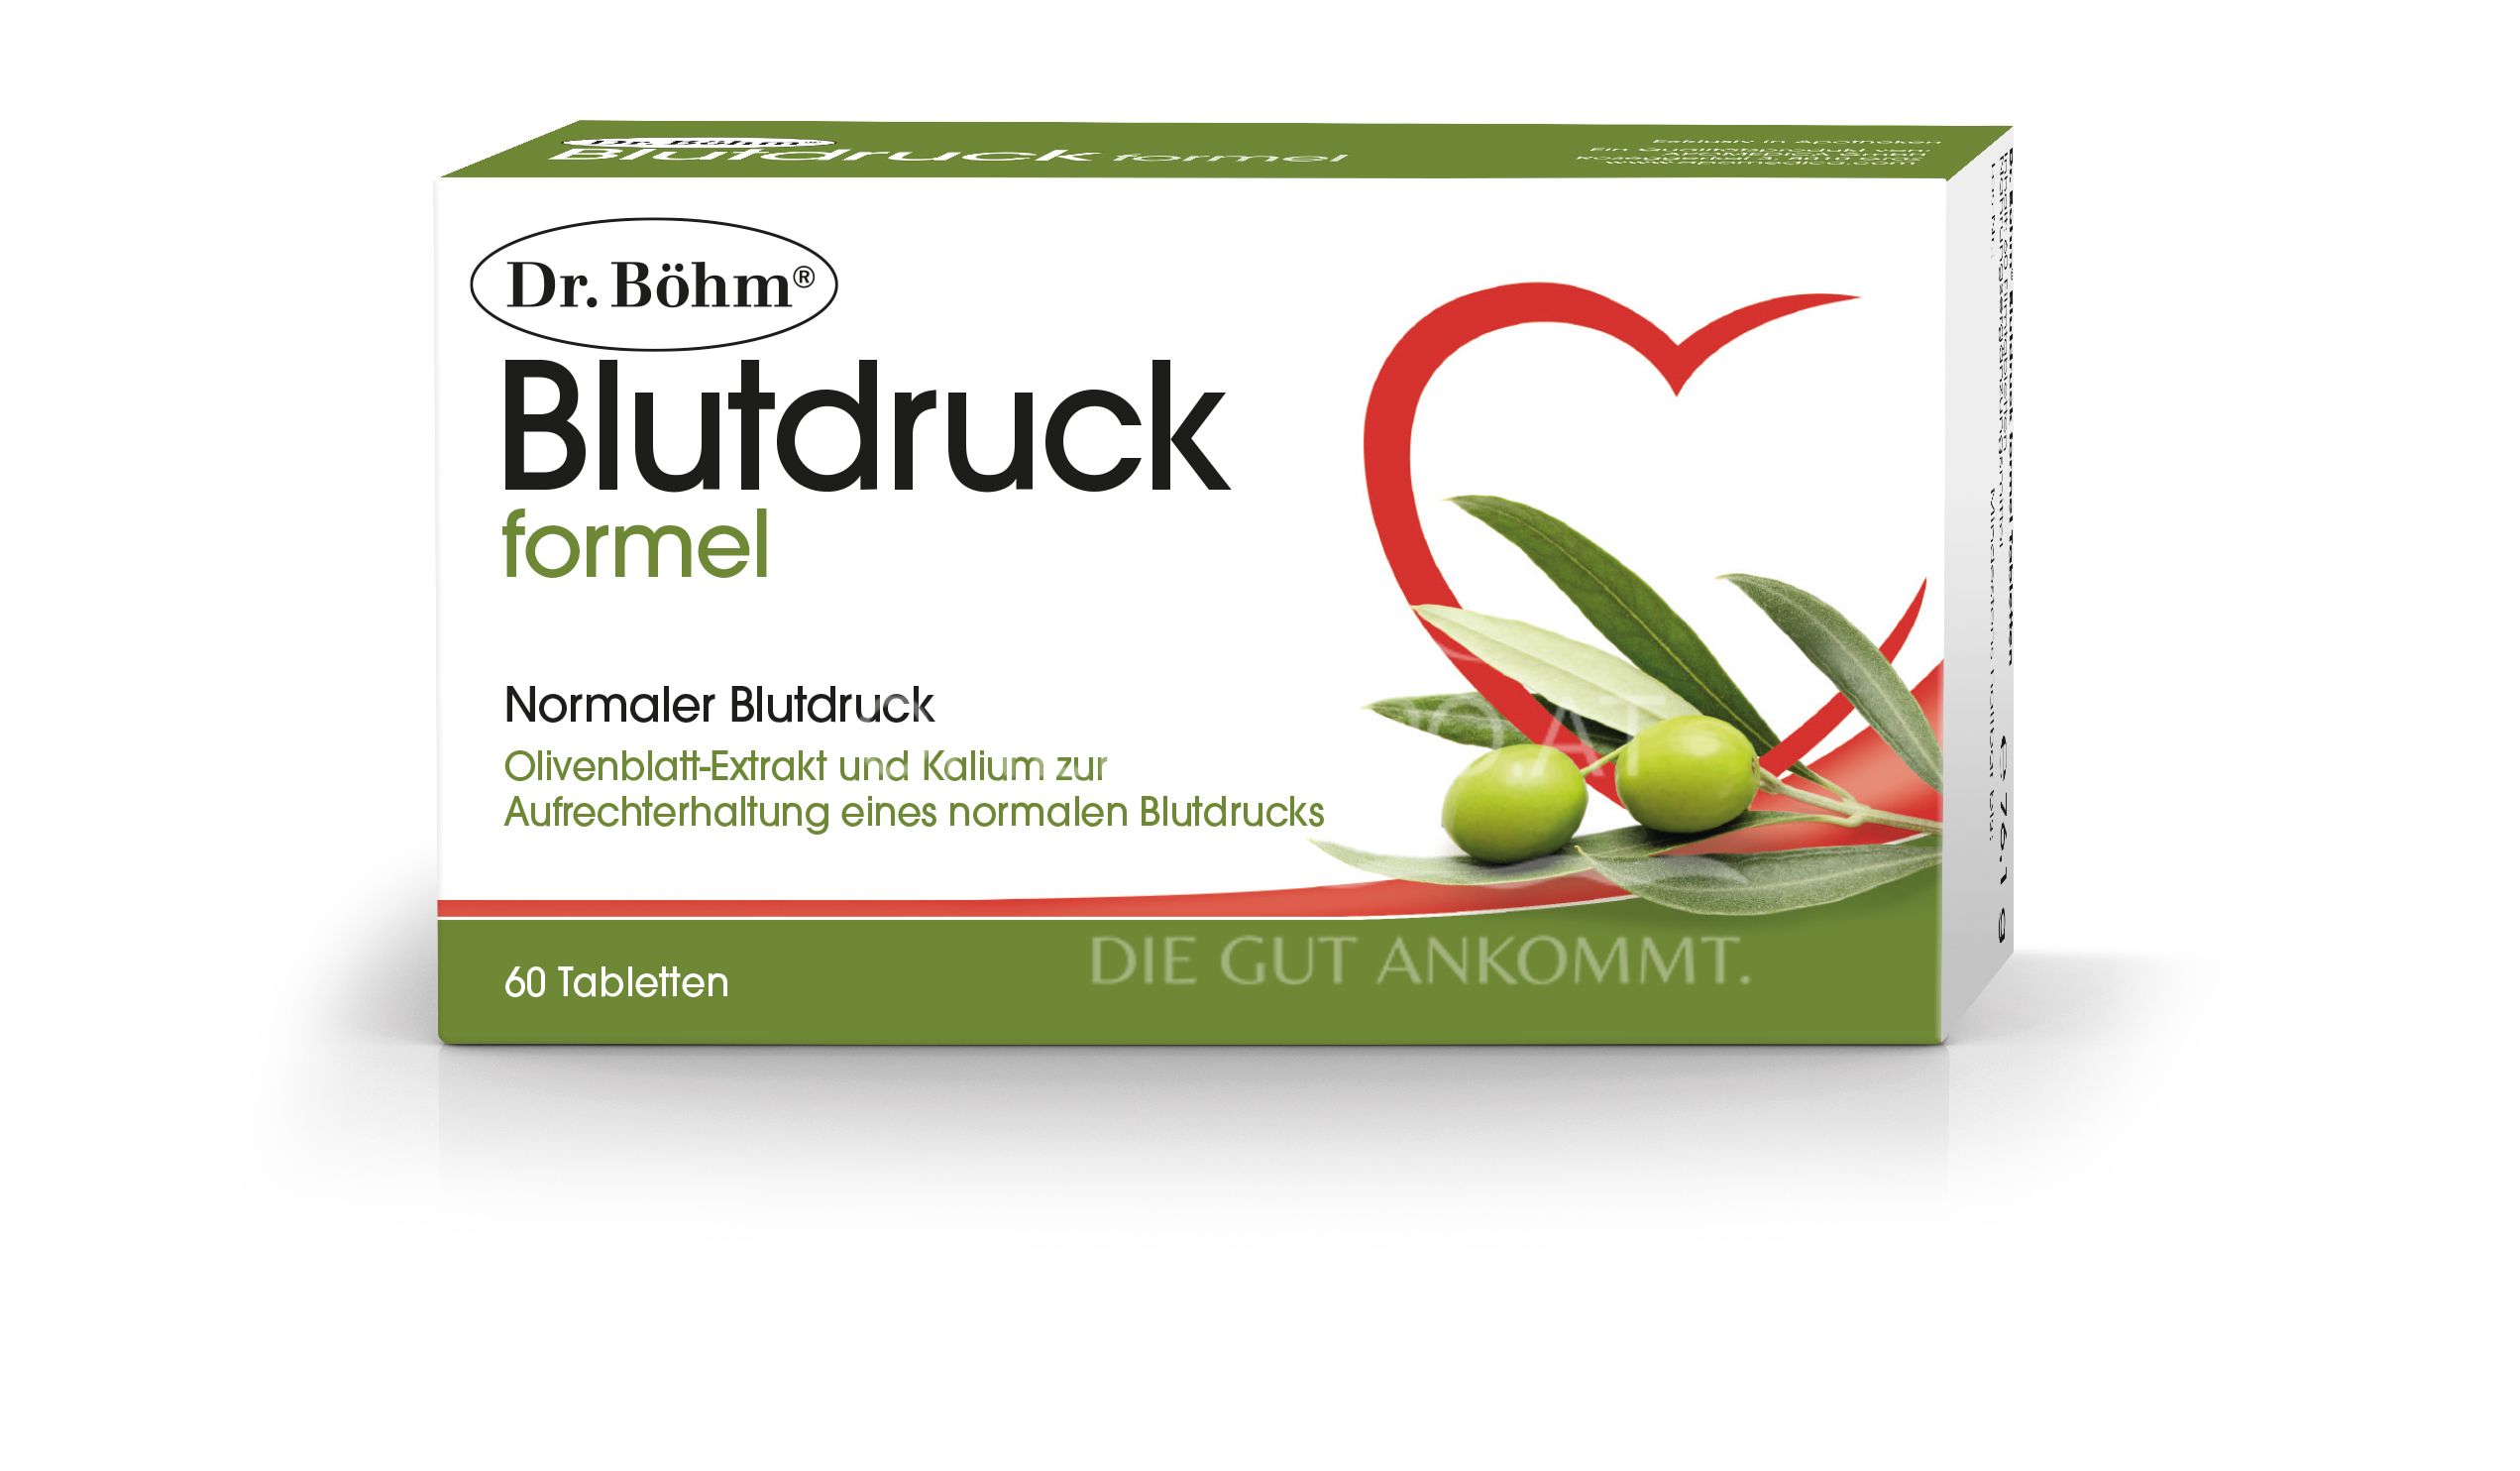 Dr. Böhm® Blutdruckformel Tabletten